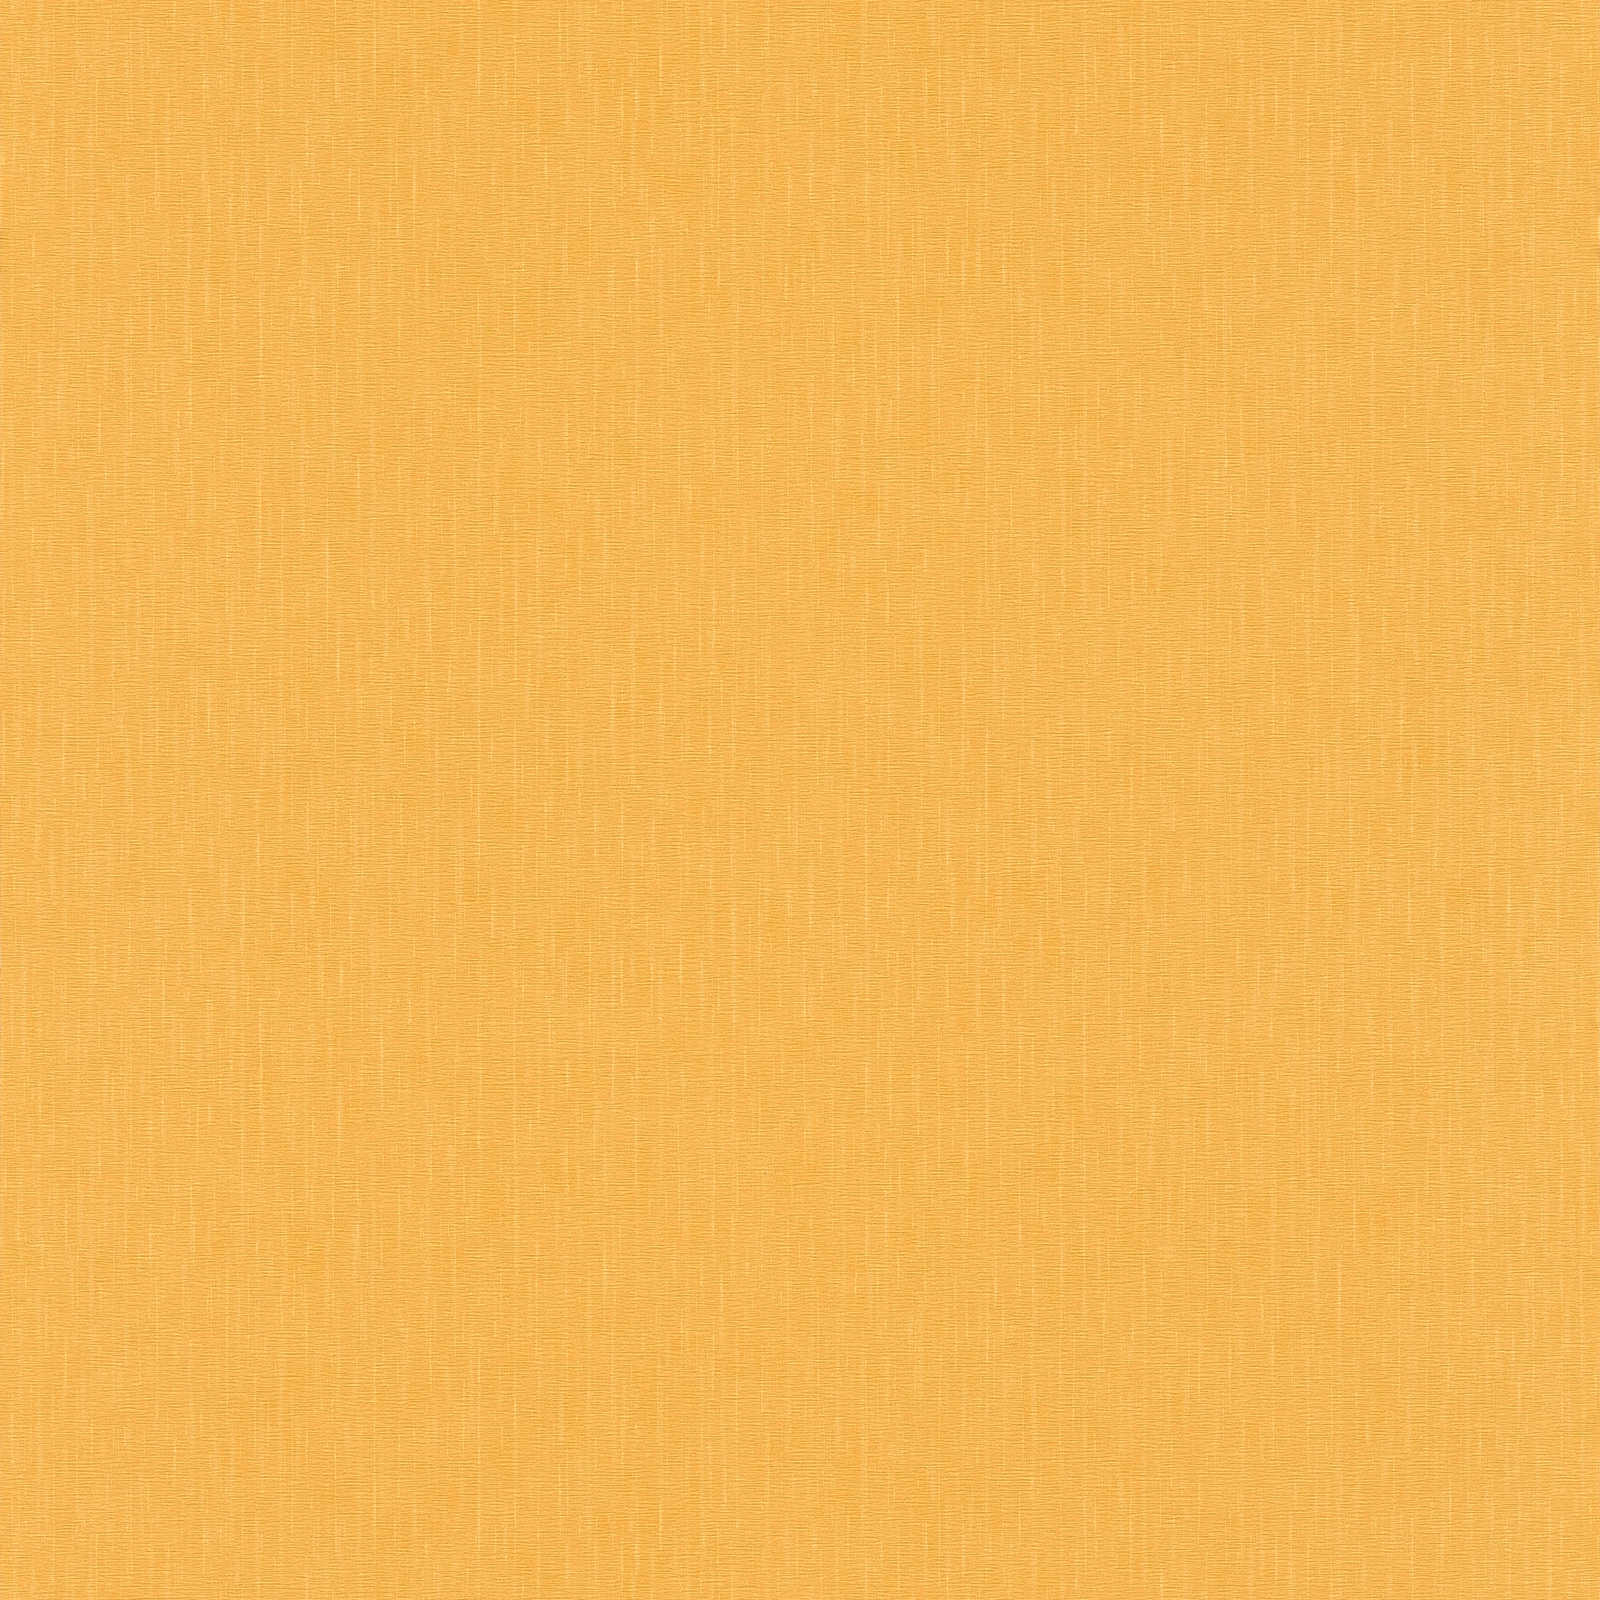 VERSACE Tapete Gelb einfarbig mit seidenmatt Glanz-Effekt
